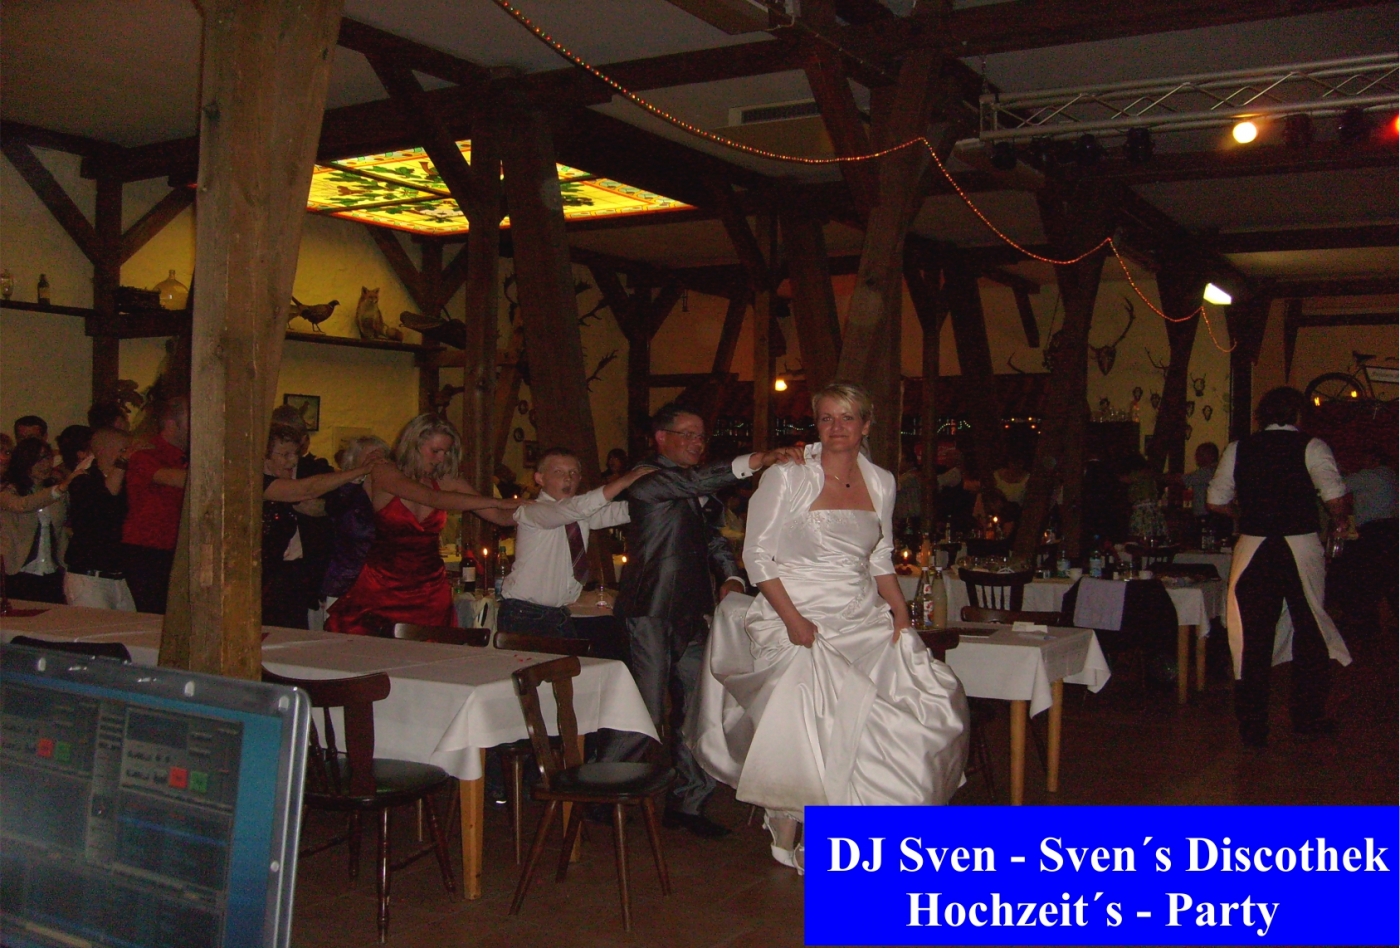 Braut und Bräutigam feiern im rustikal dekorierten Festsaal mit Gästen bei der Hochzeitsparty. Hochzeitsfotografie, Eheringe, Hochzeitstorte umranden die fröhliche Feier.